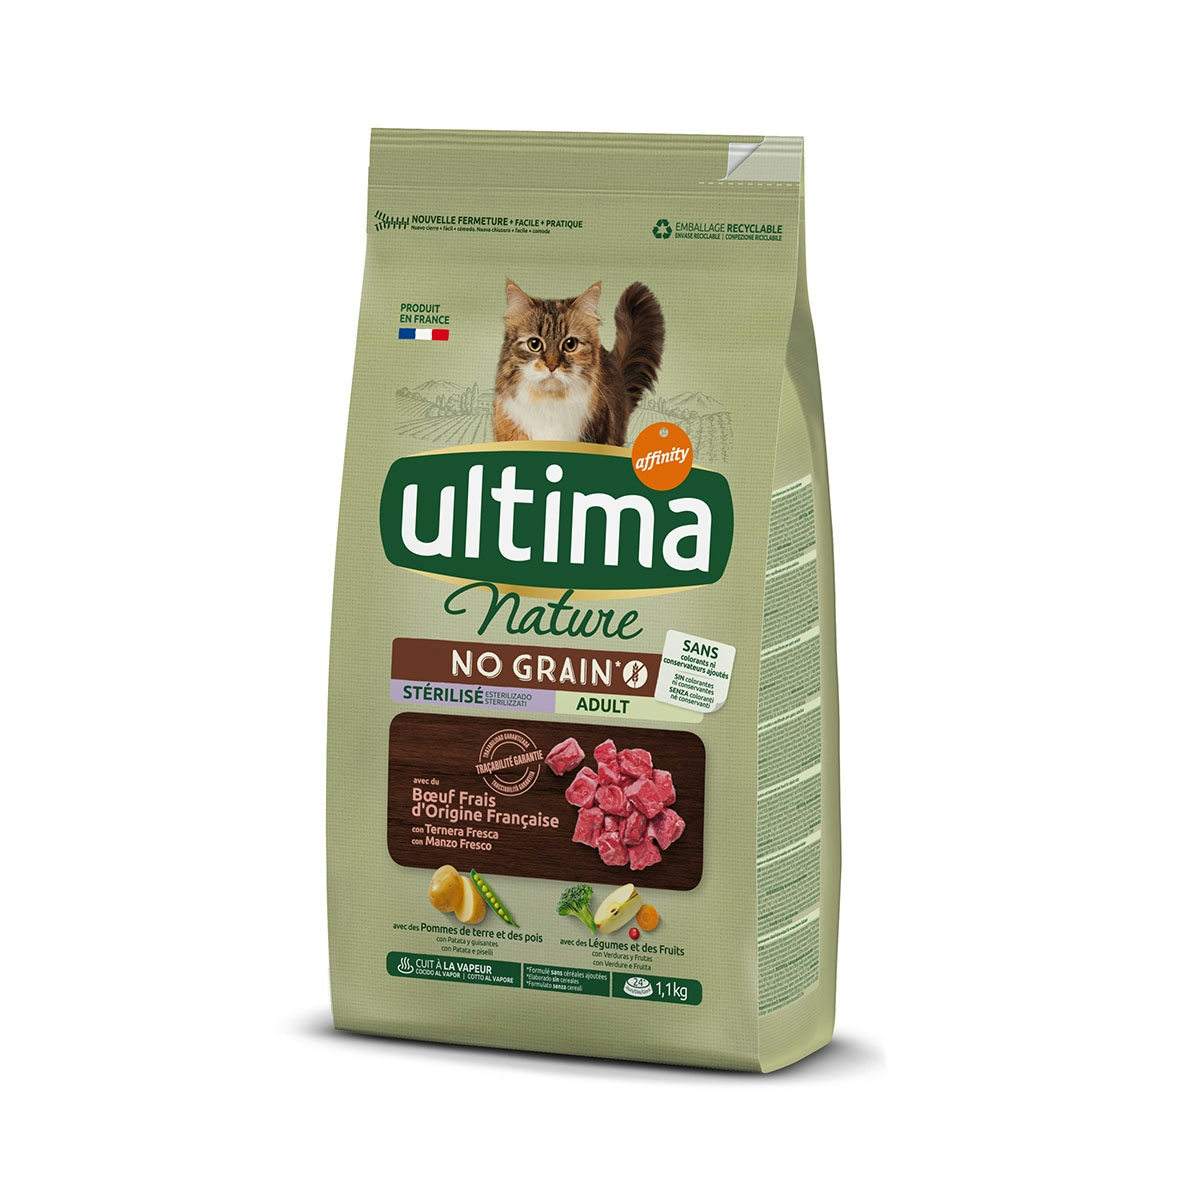 Pienso de buey para gatos esterilizados adultos ULTIMA 1.1KG